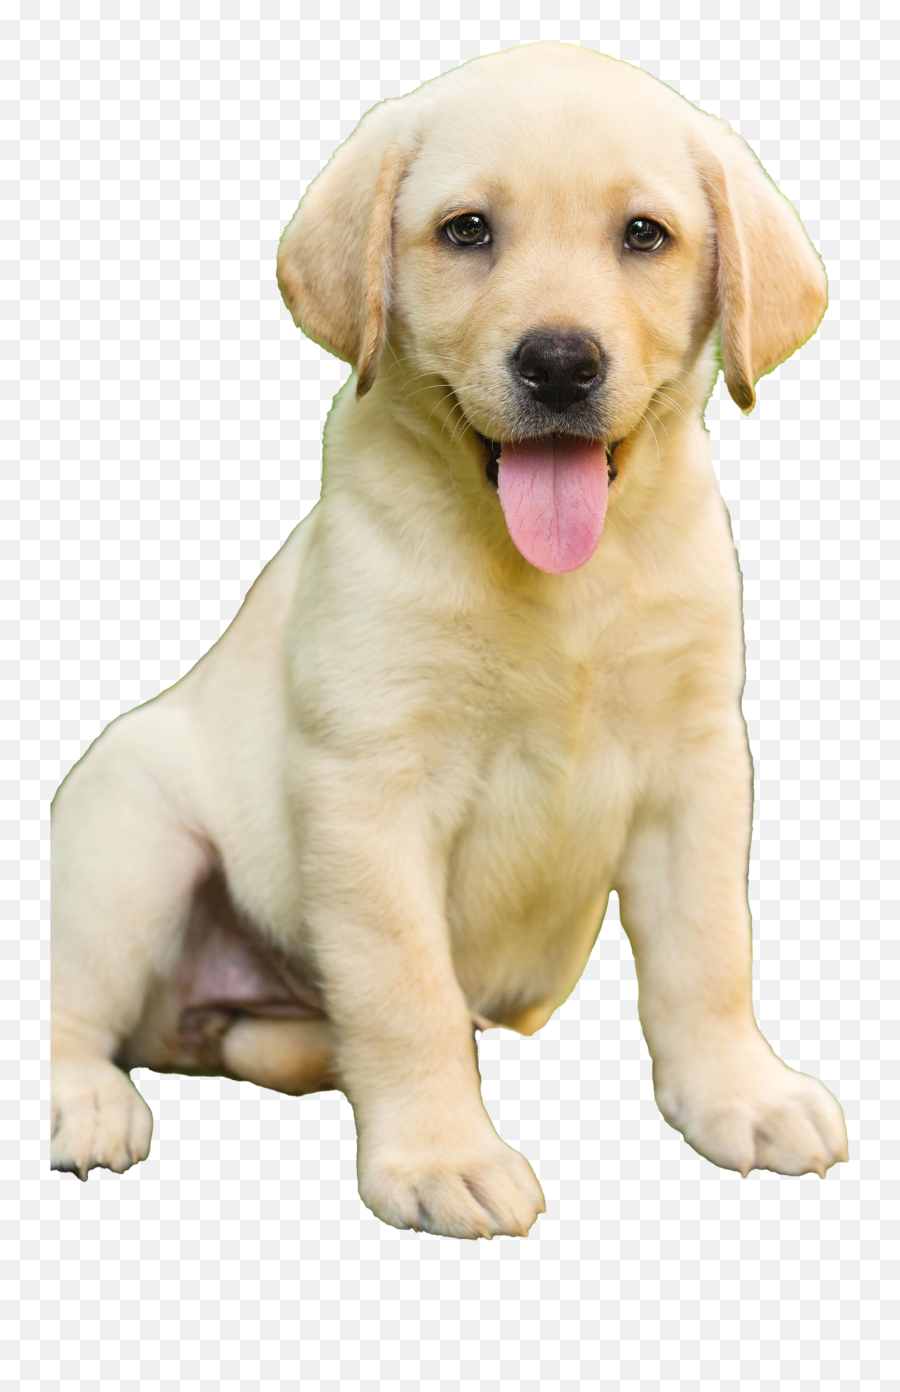 Labrador Retriever Puppy Transparent - Labrador Dog Emoji,Puppy Transparent Background